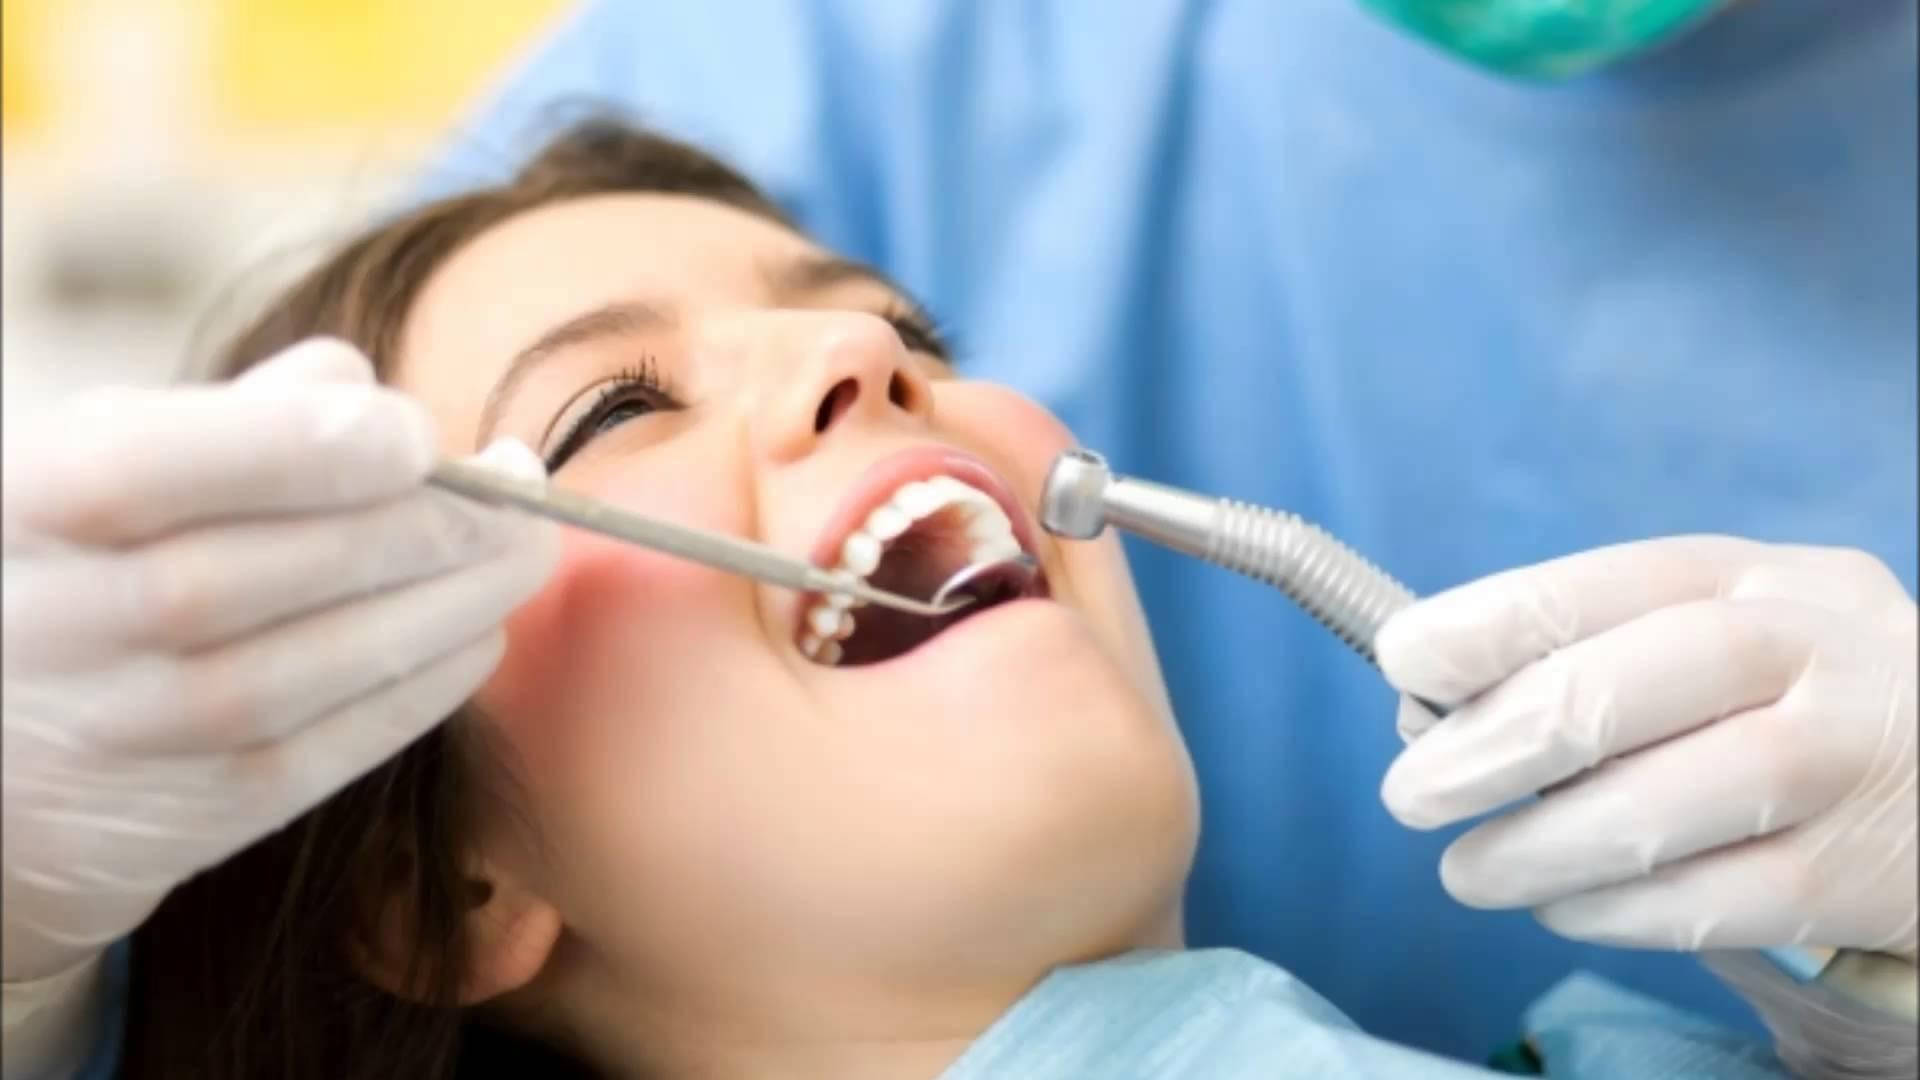 En tandlæges patient smiler under en procedure. Wallpaper